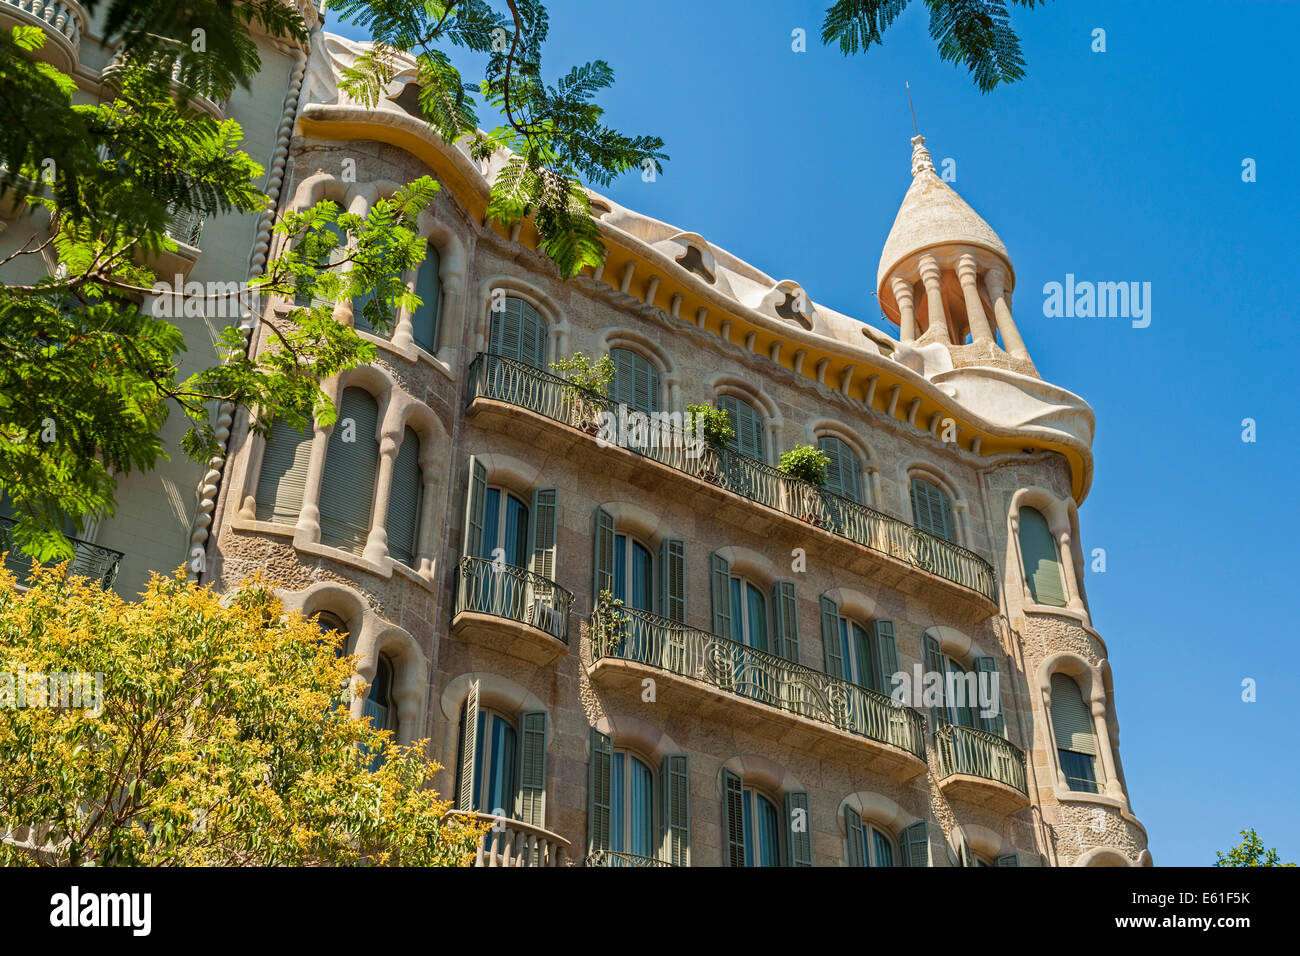 Esterno casa Sayrach l'ultima casa modernista di Barcellona costruito da Manuel Sayrach ho Carreras tra 1915-1918. JMH6336 Foto Stock